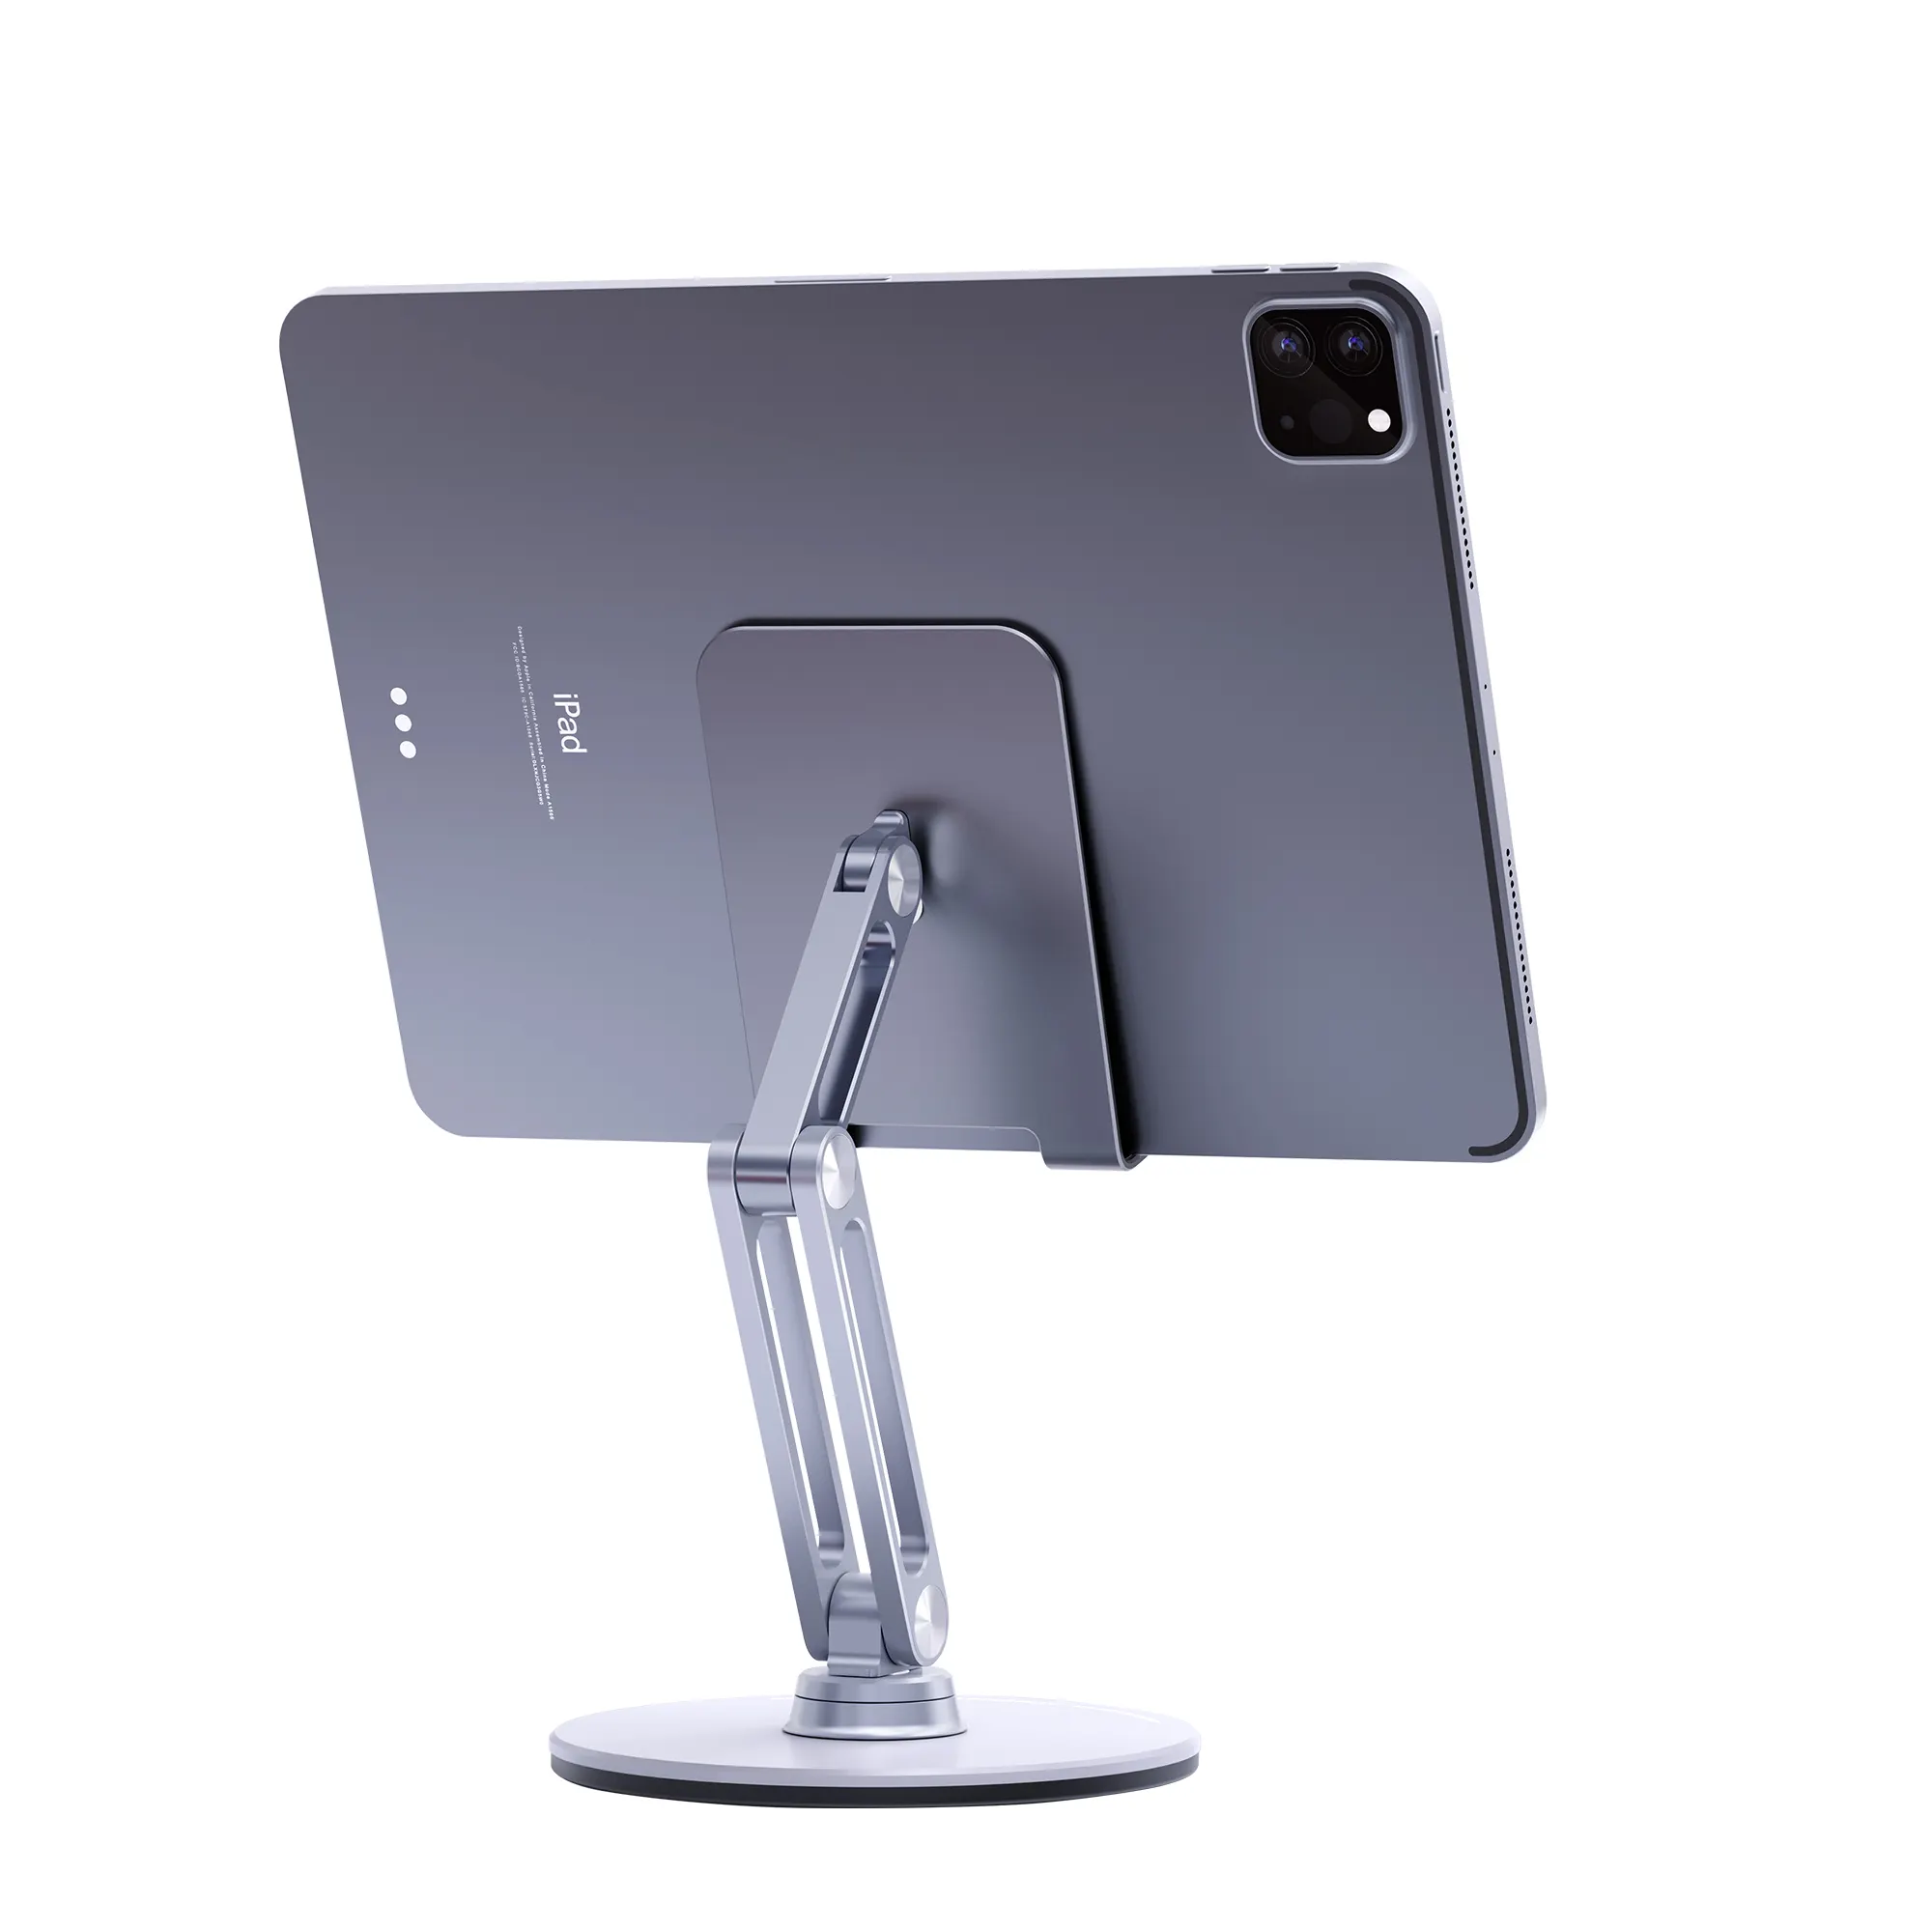 Boneruy Foldable Tablet Stand Adjustable Phone Holder Cheap Desktop Mobile Grip Holder for Apple iPad